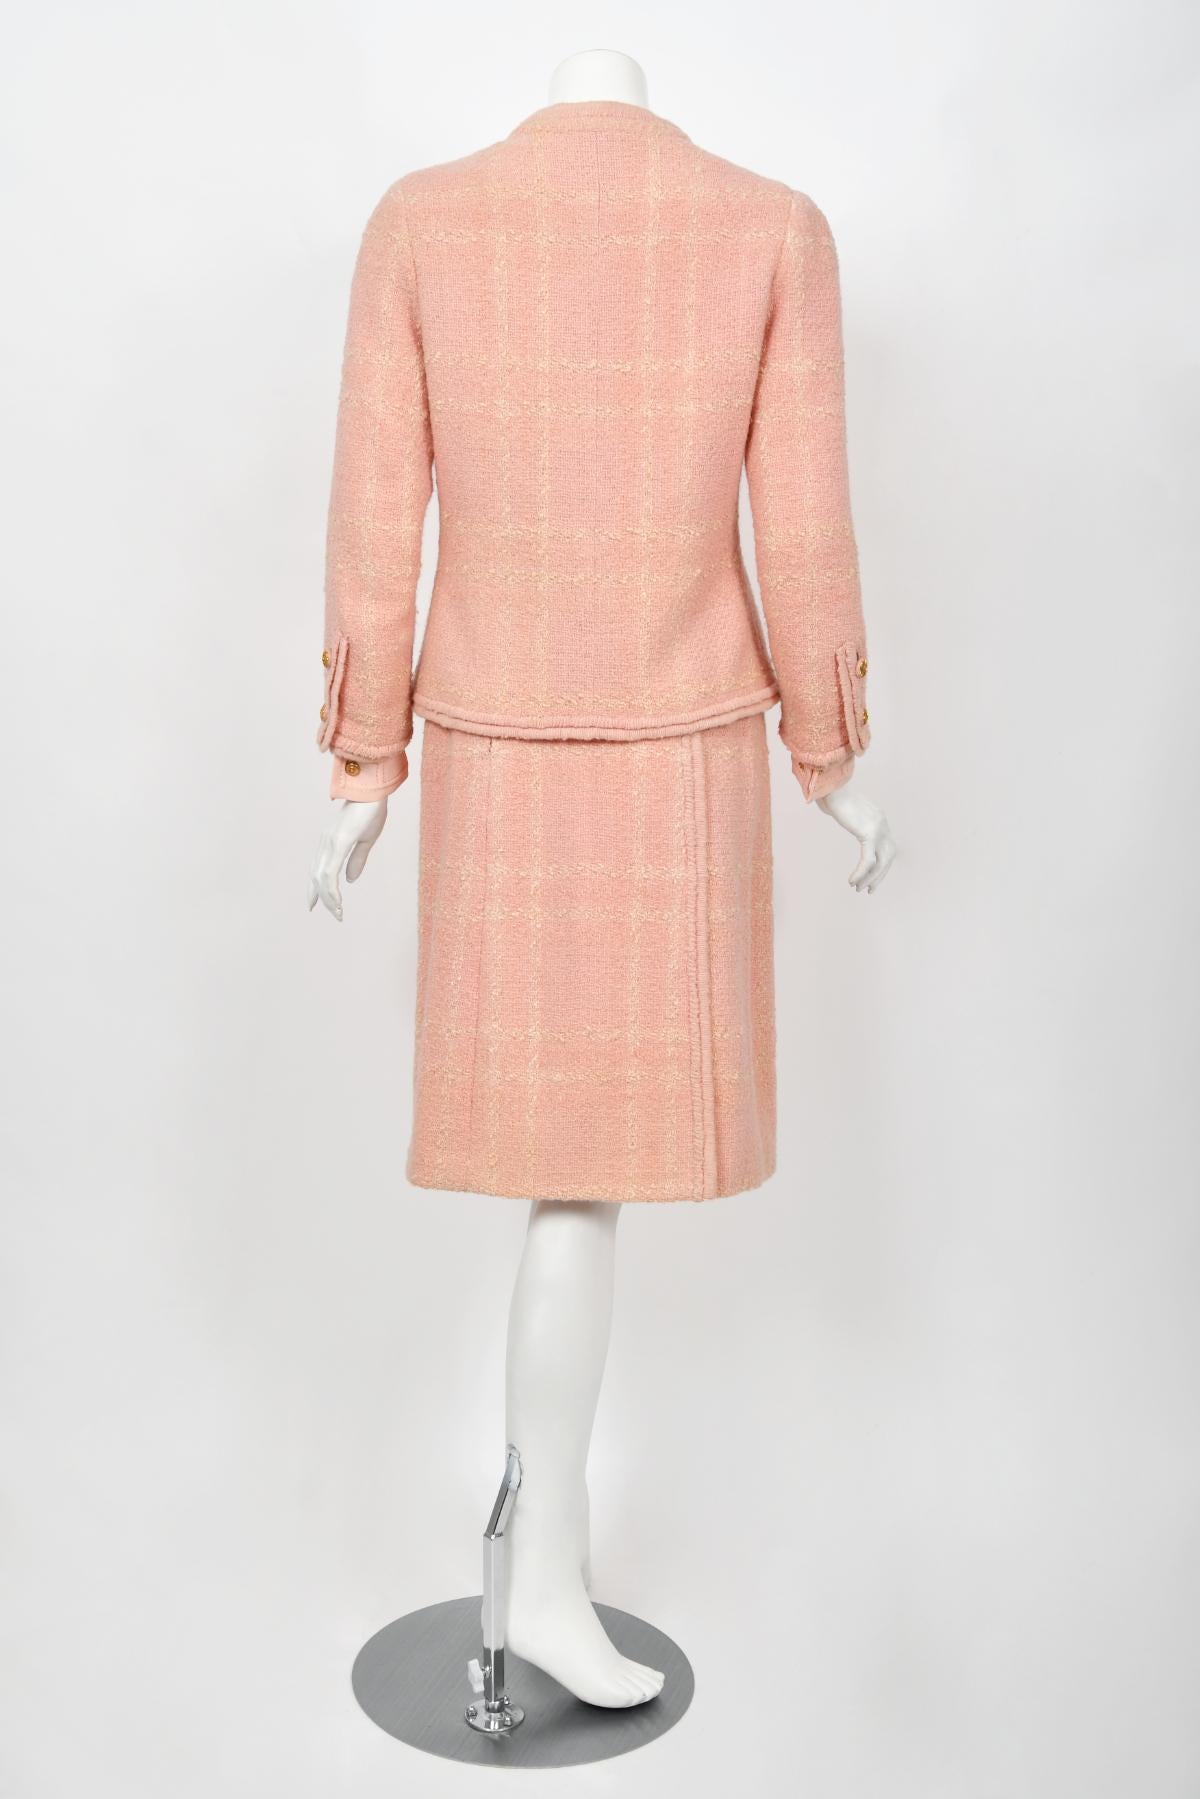 Chanel Haute Couture documenté veste chemisier jupe chemisier en laine rose vintage 1973 en vente 12